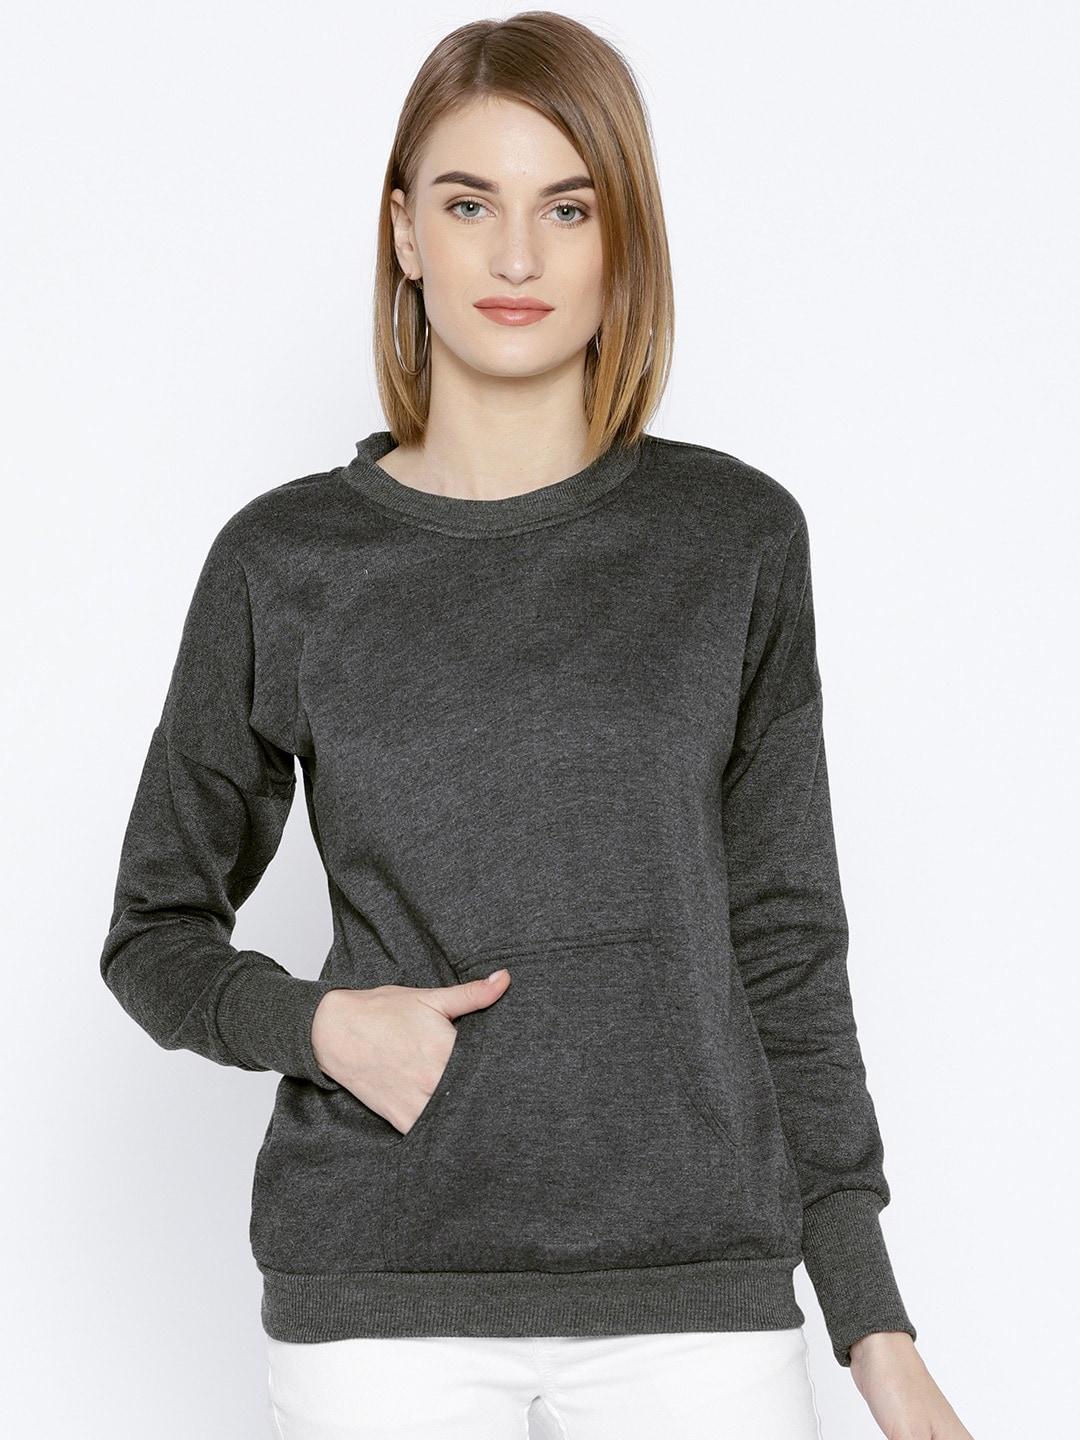 baesd-women-charcoal-sweatshirt